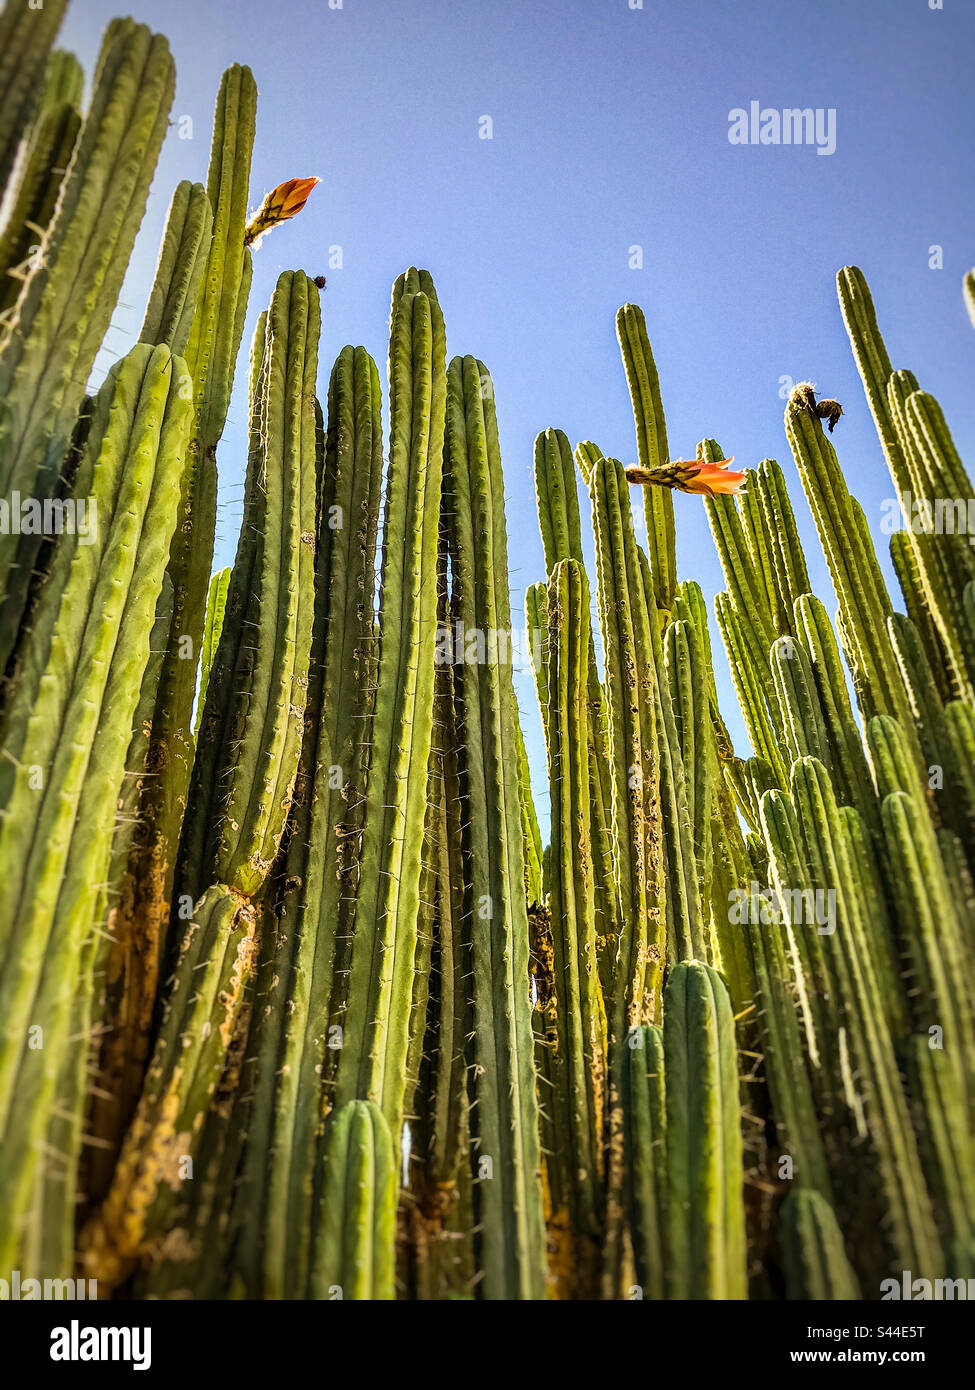 Mur de cactus. Vue à angle bas de nombreuses grandes tiges de cactus, certaines avec des fleurs contre le ciel bleu. Banque D'Images